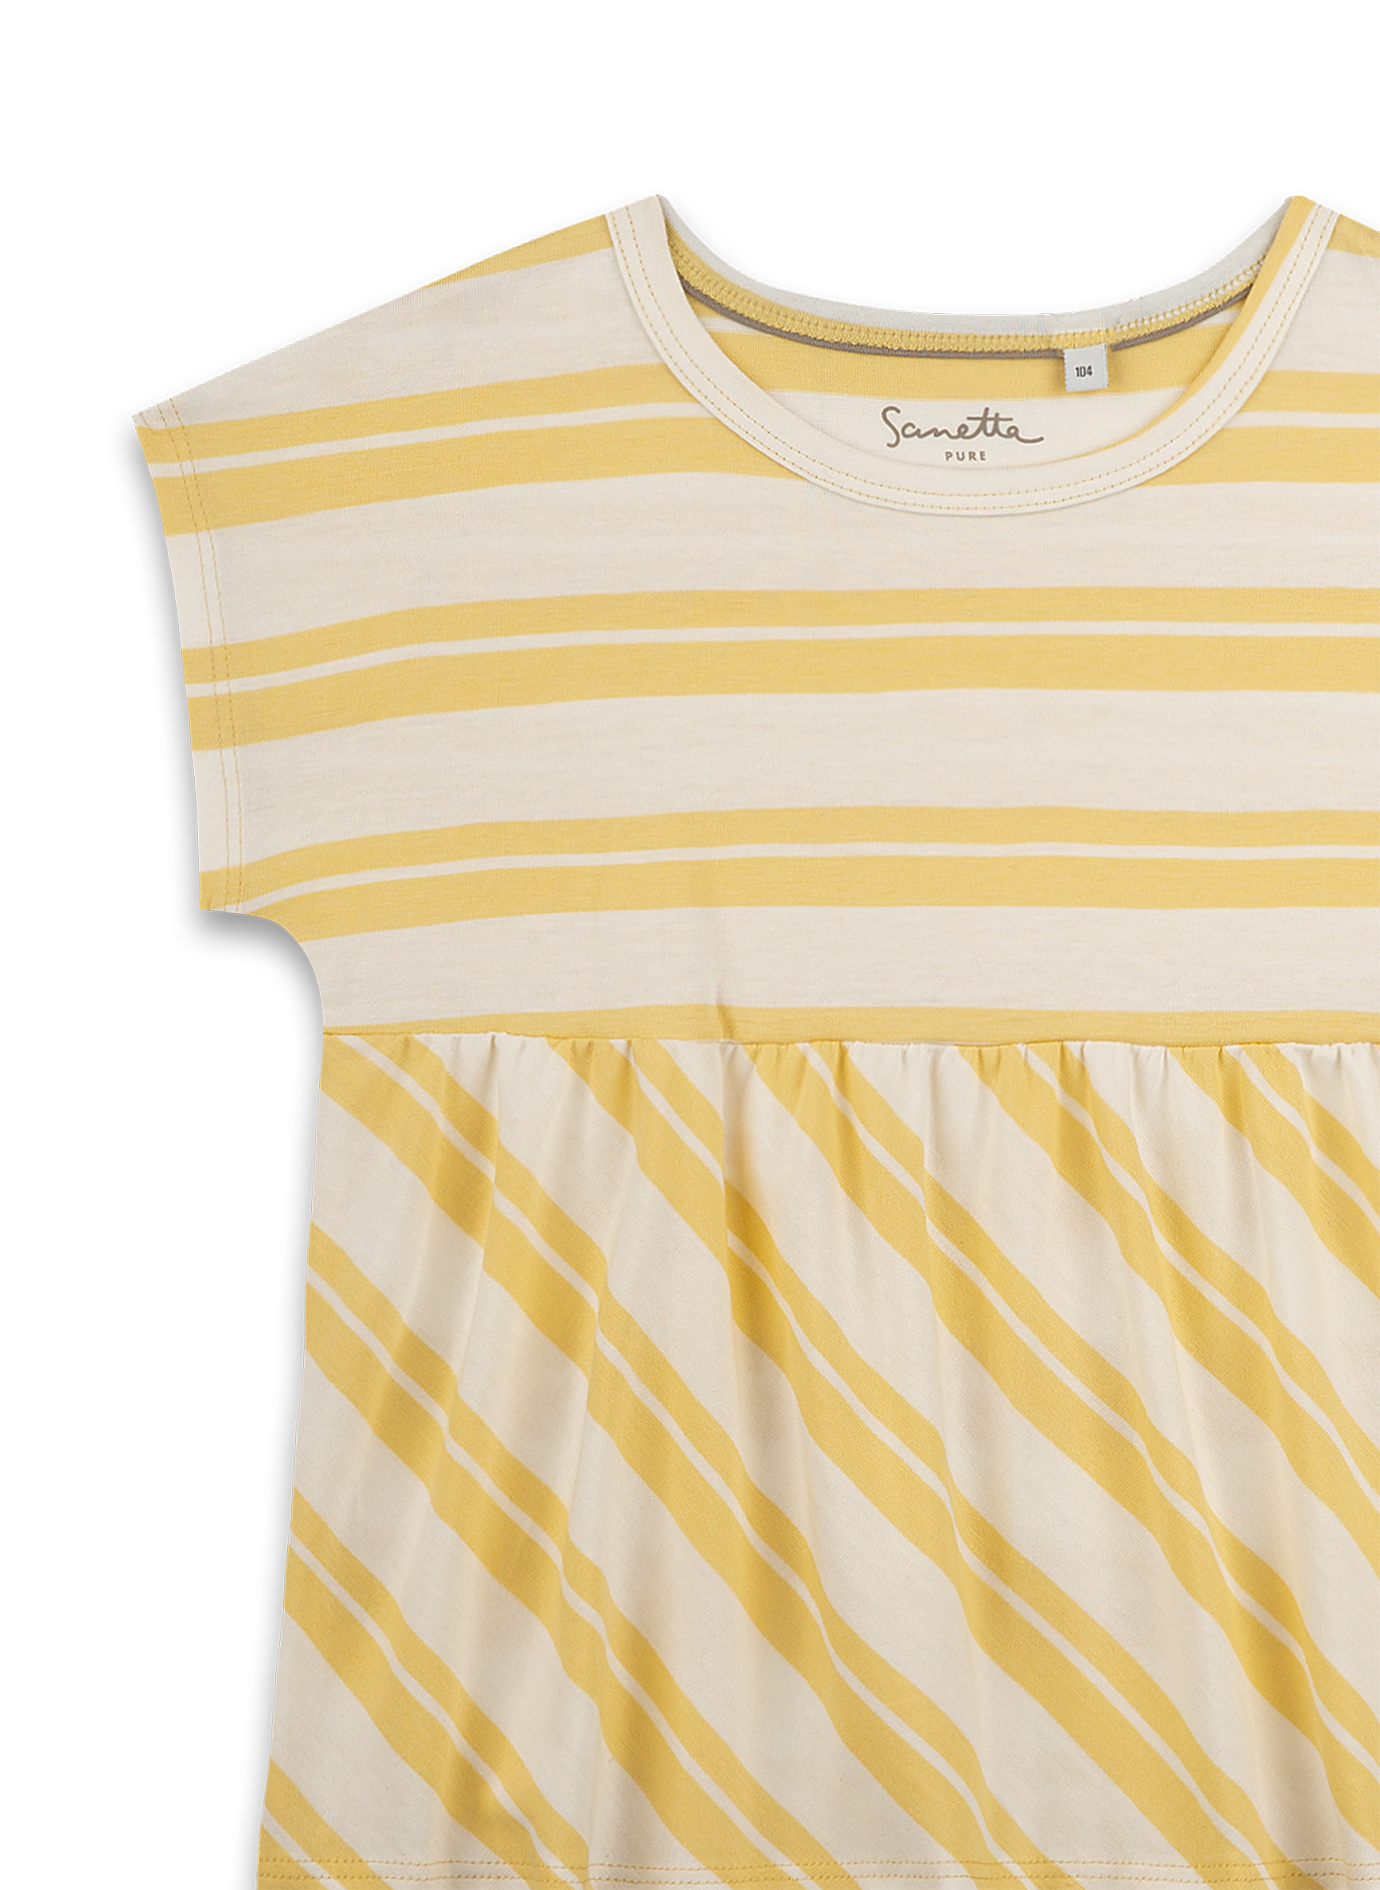 Mädchen T-Shirt Gelb Ringel